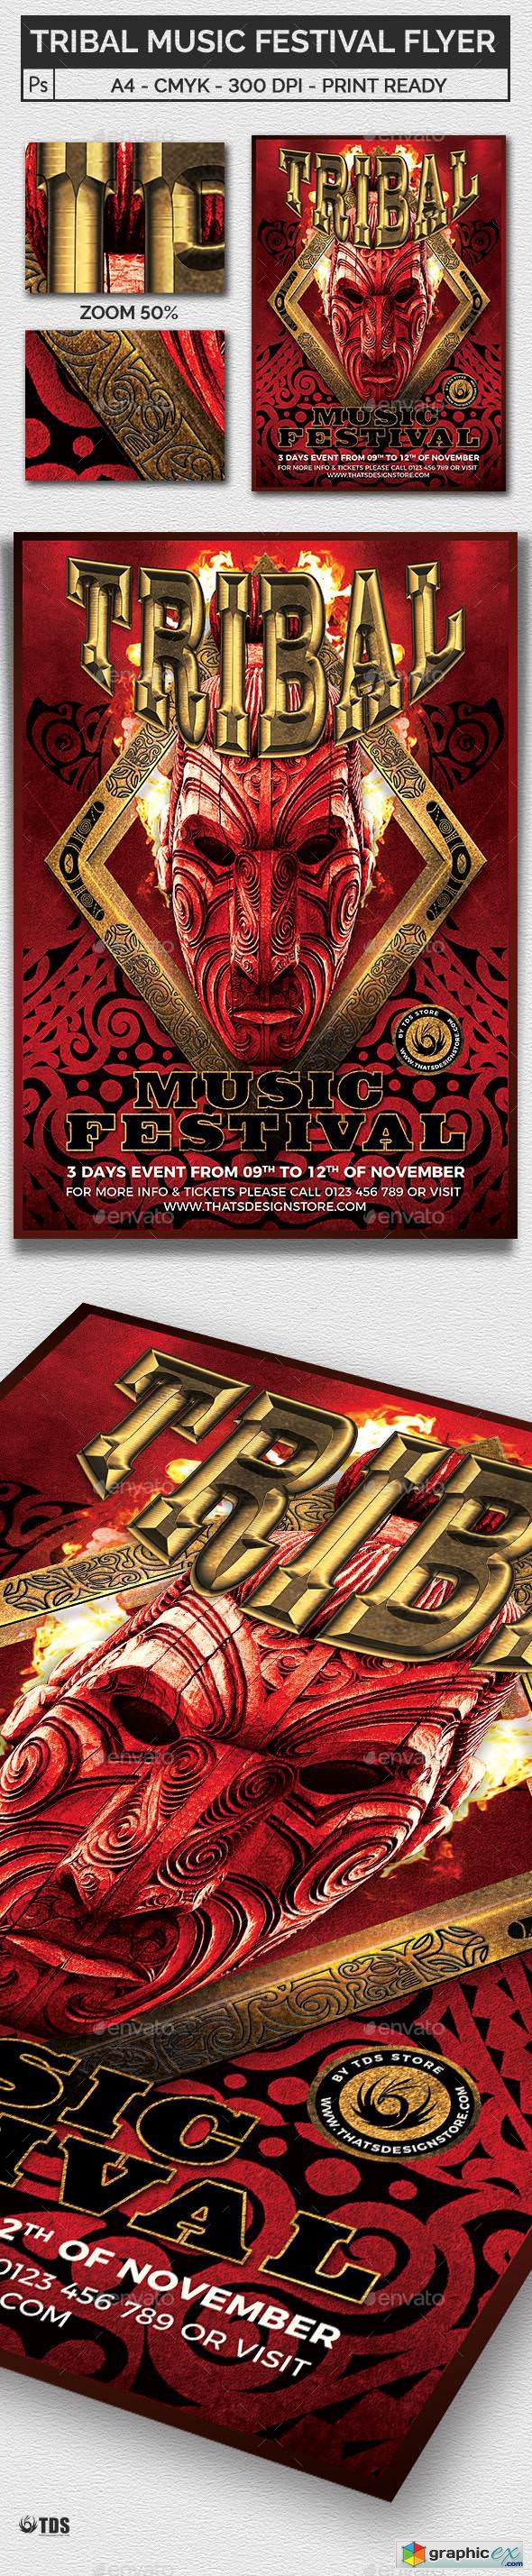 Tribal Music Festival Flyer Template